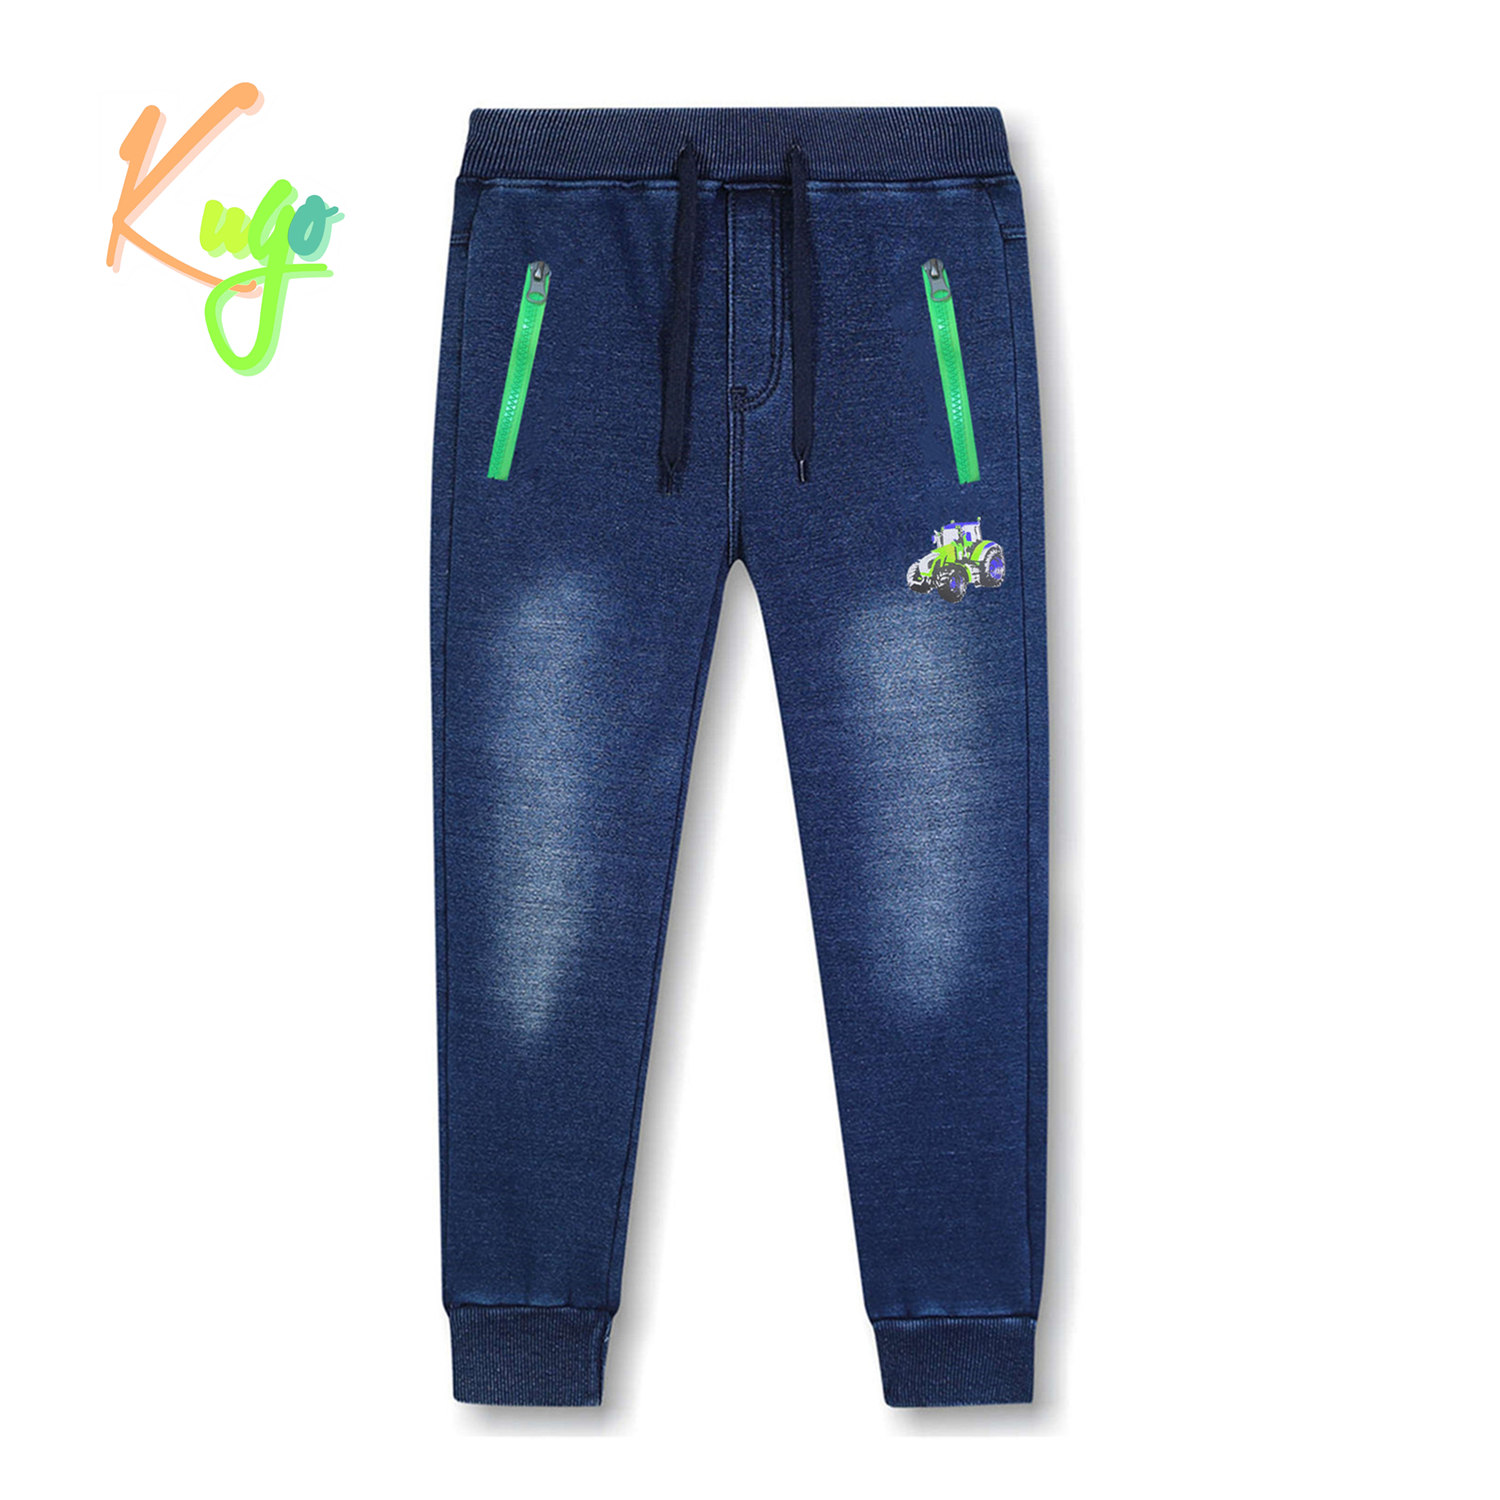 Chlapecké riflové kalhoty/ tepláky, zateplené - KUGO CK0923, modrá Barva: Modrá, Velikost: 104